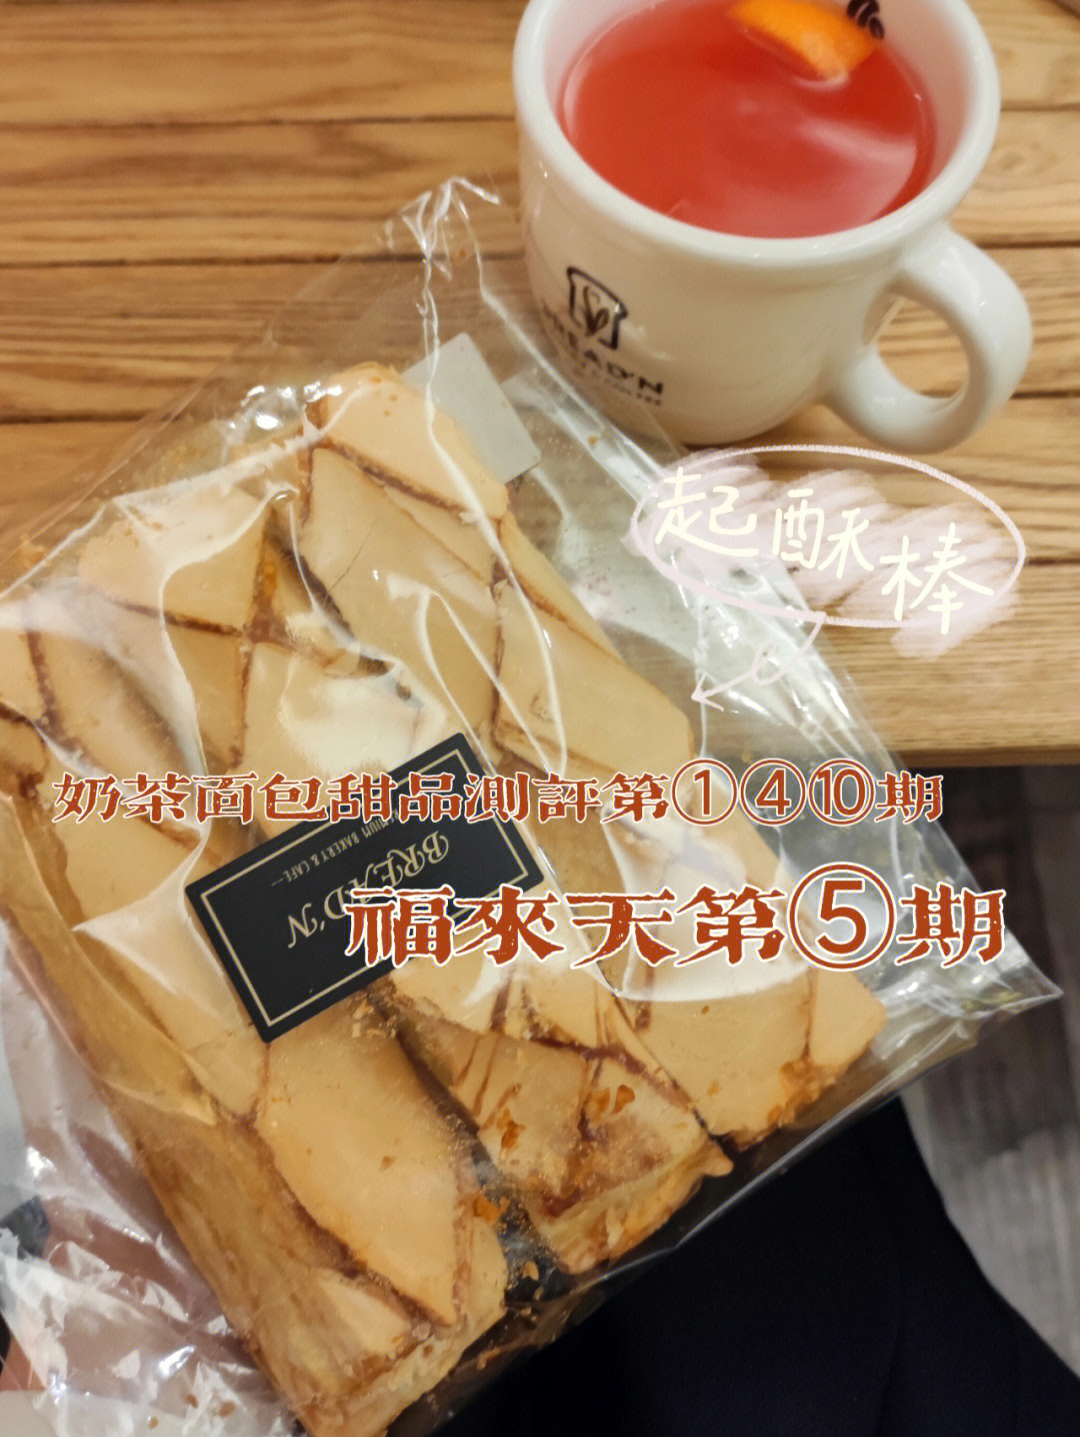 奶茶面包测评第①④⑩期00福来天第⑤期